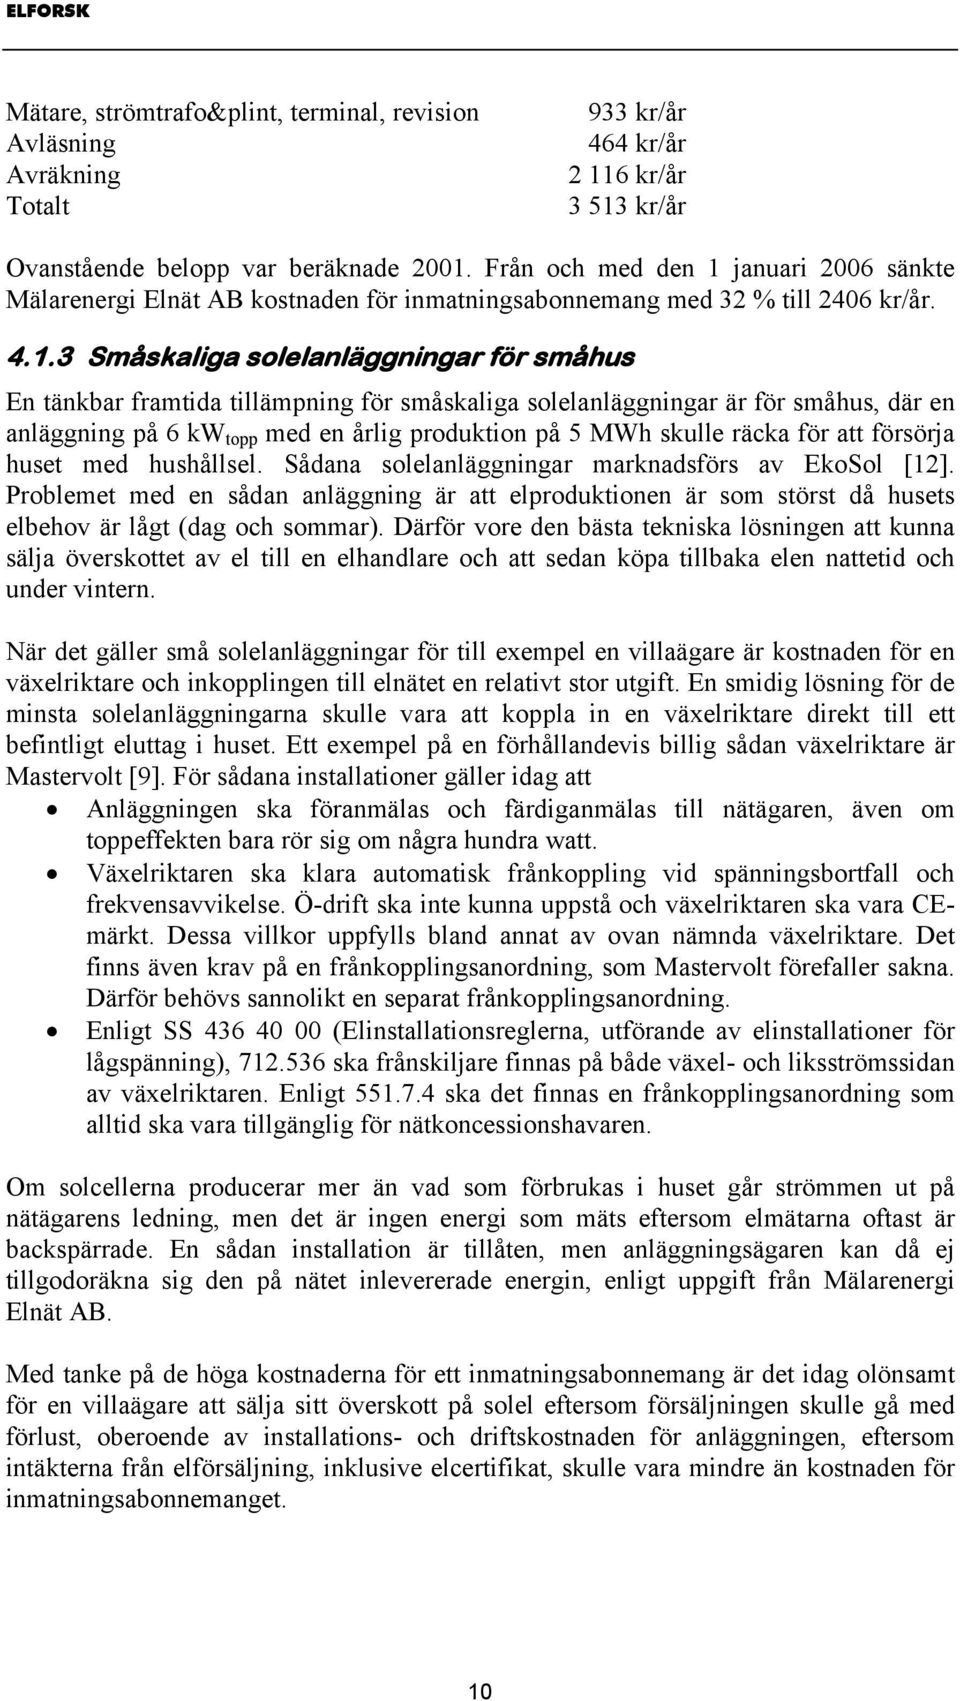 januari 2006 sänkte Mälarenergi Elnät AB kostnaden för inmatningsabonnemang med 32 % till 2406 kr/år. 4.1.